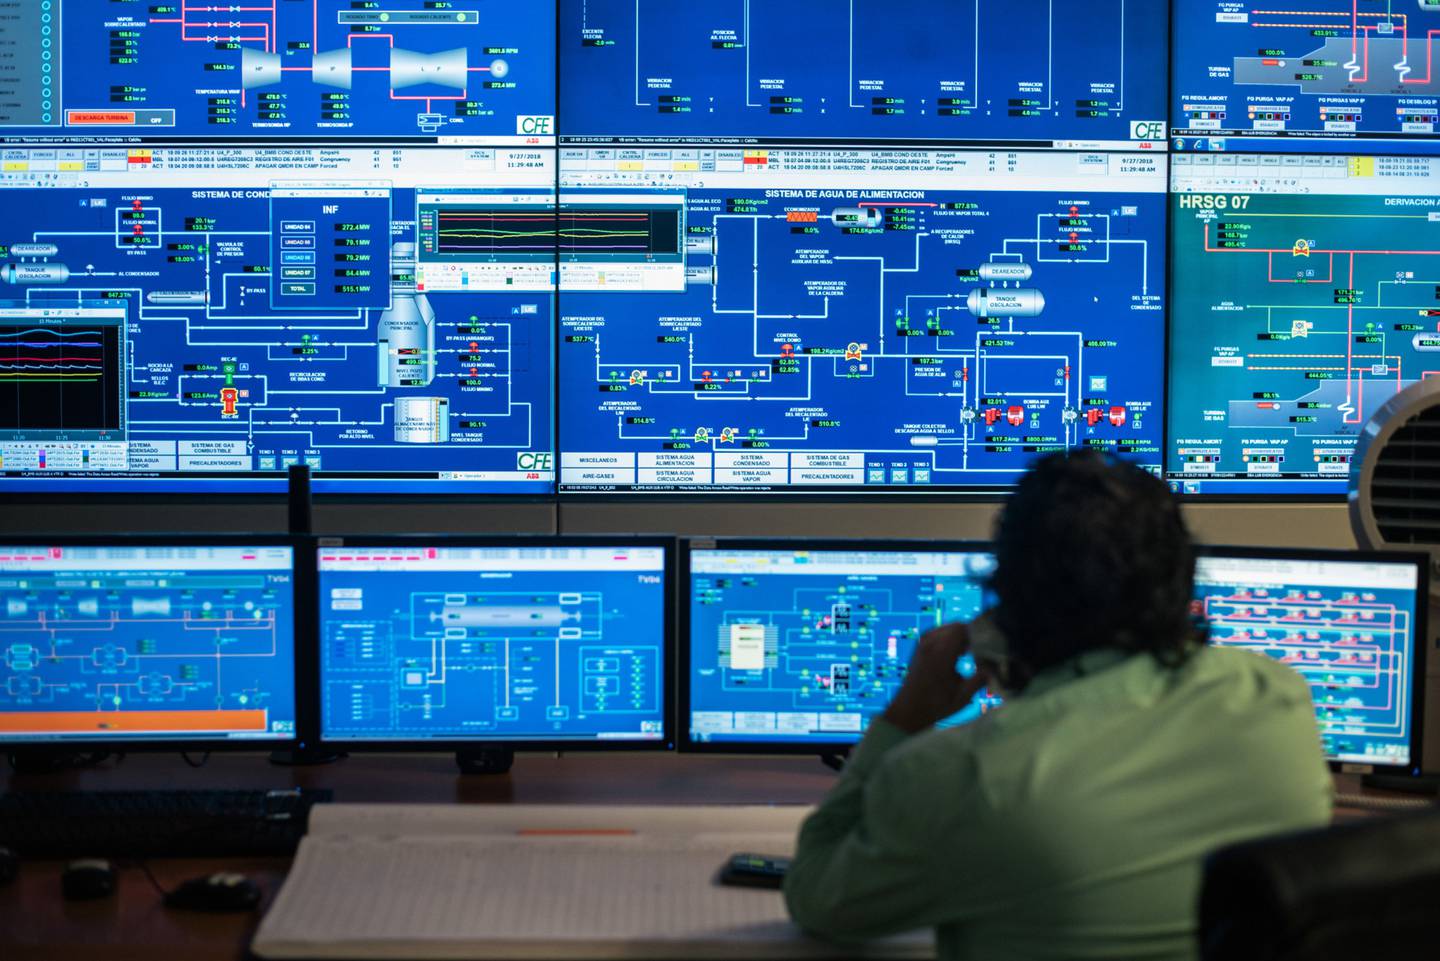 Un empleado habla por teléfono mientras monitorea operaciones en el centro del control de una central eléctrica de la Comision Federal de Electricidad (CFE).